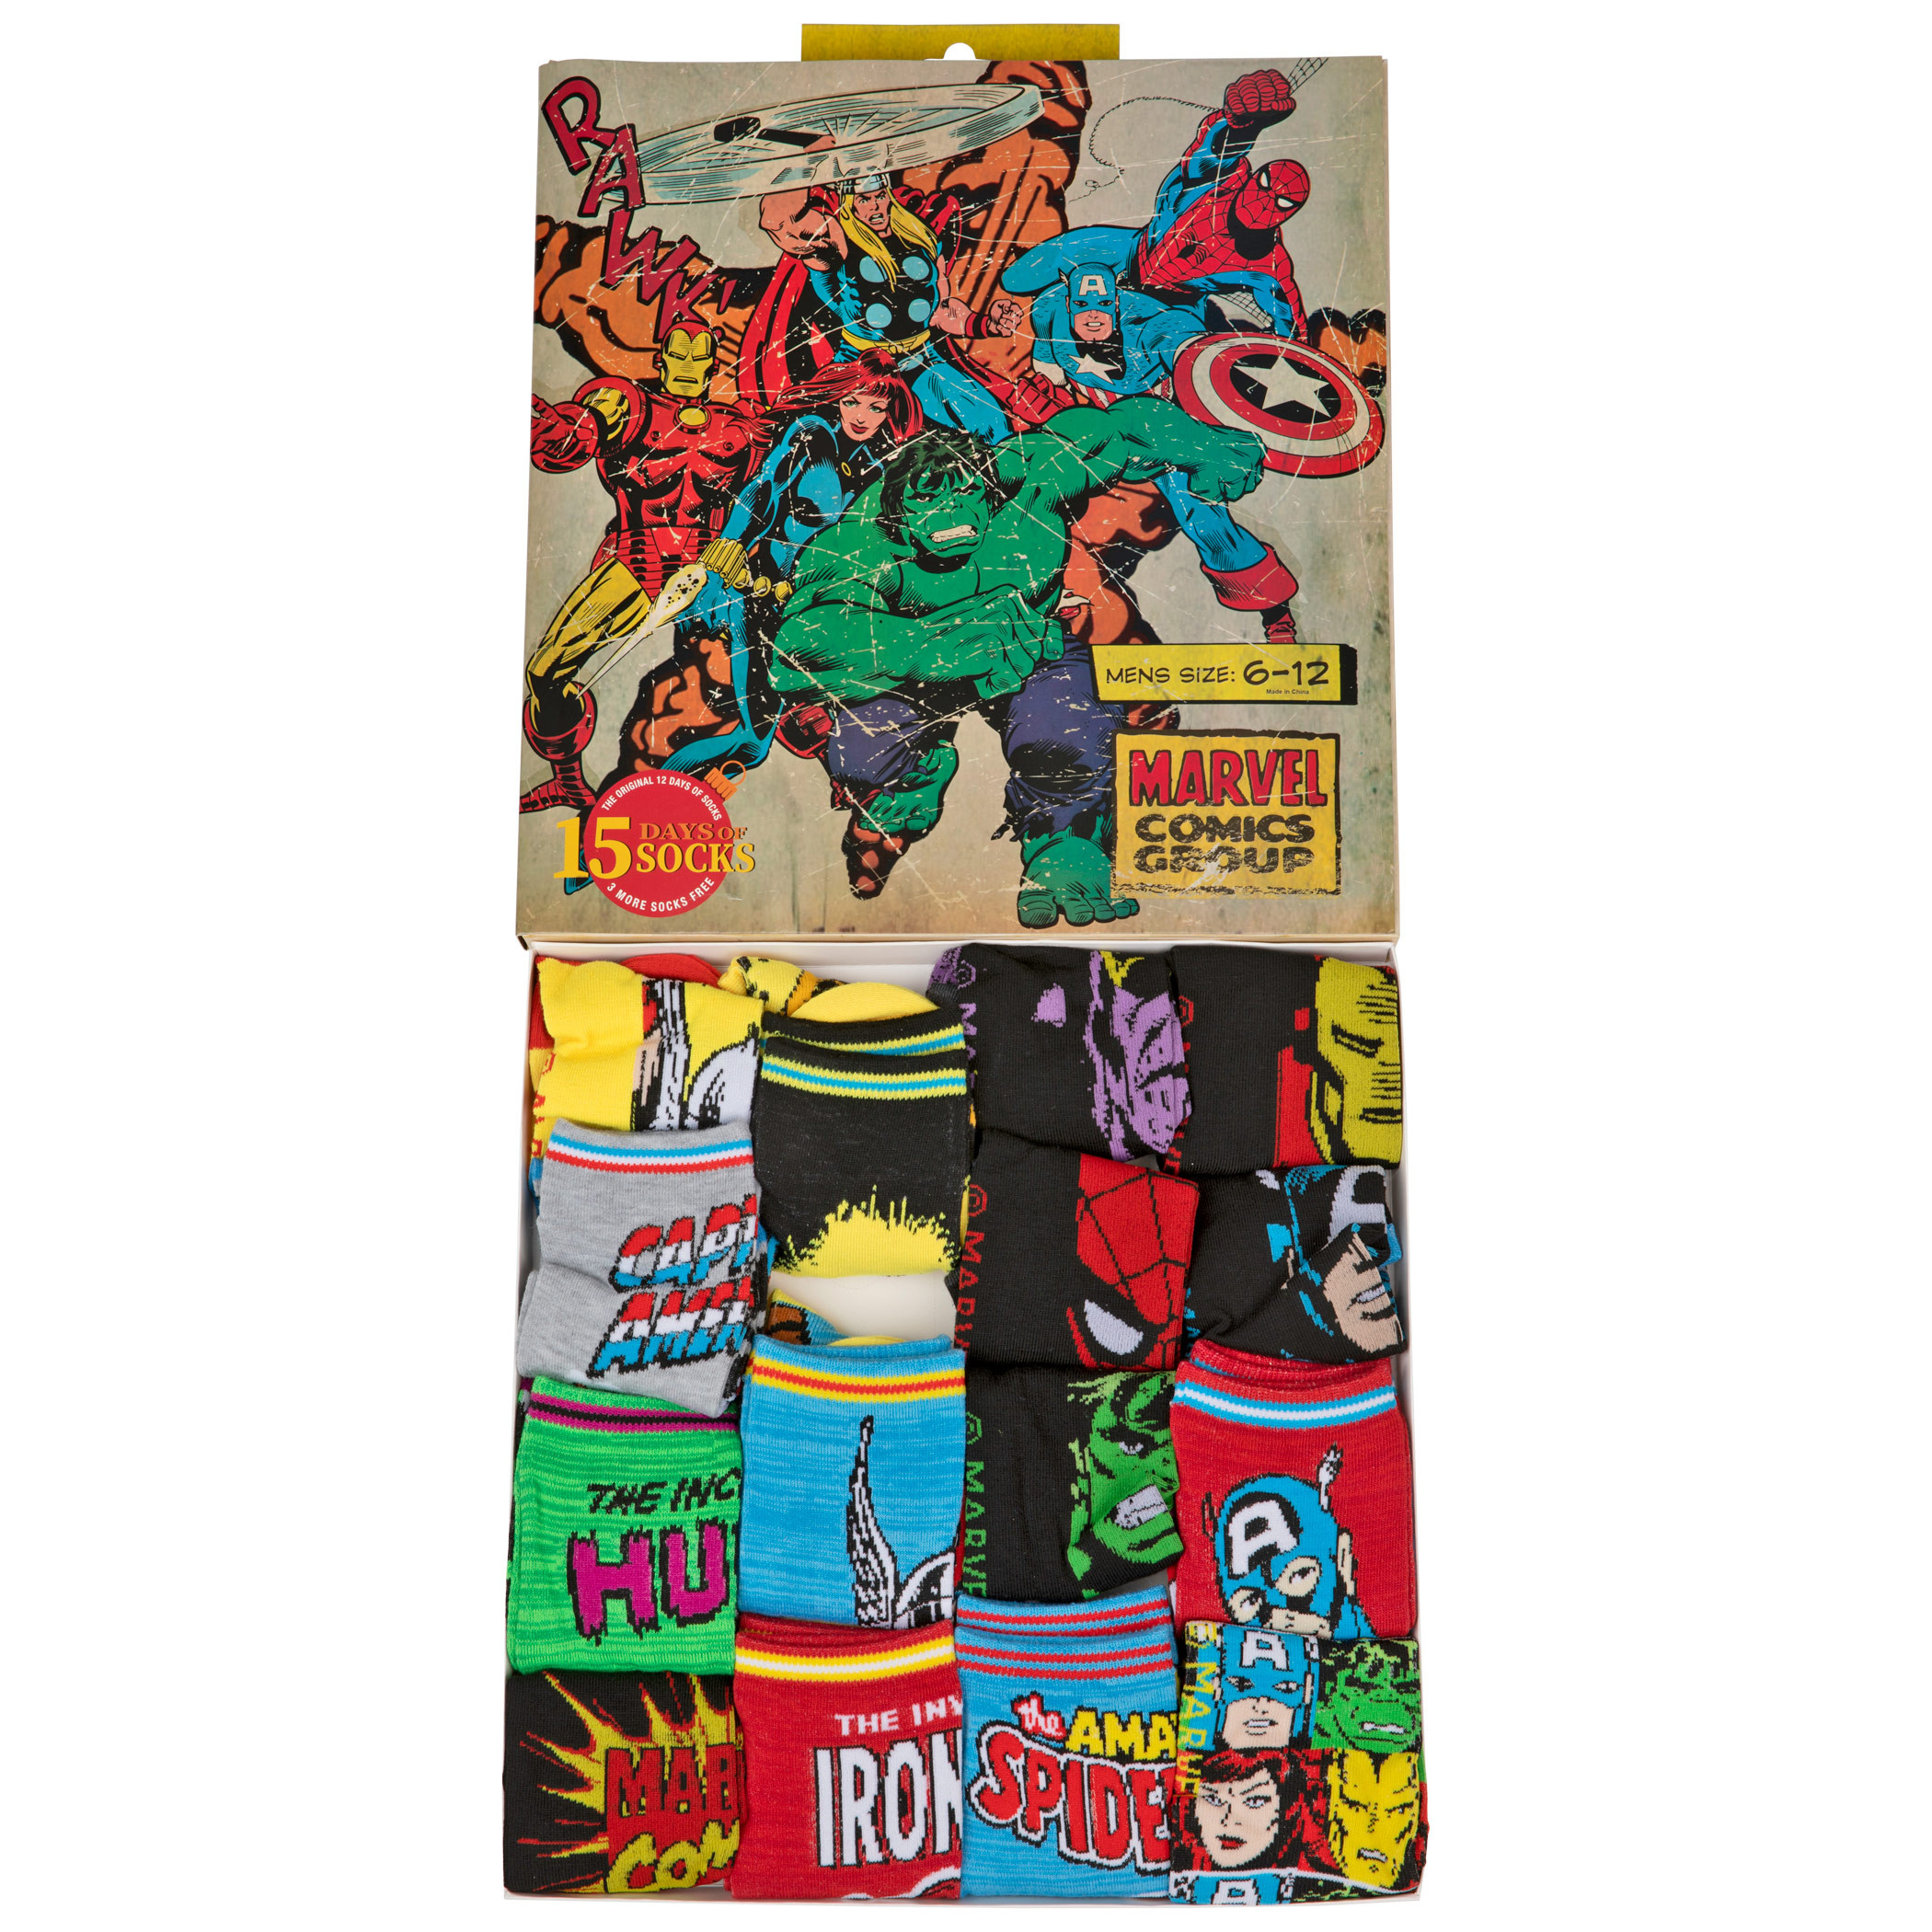 Marvel Comics 15 Days of Socks Advent Gift Box Men's Socks